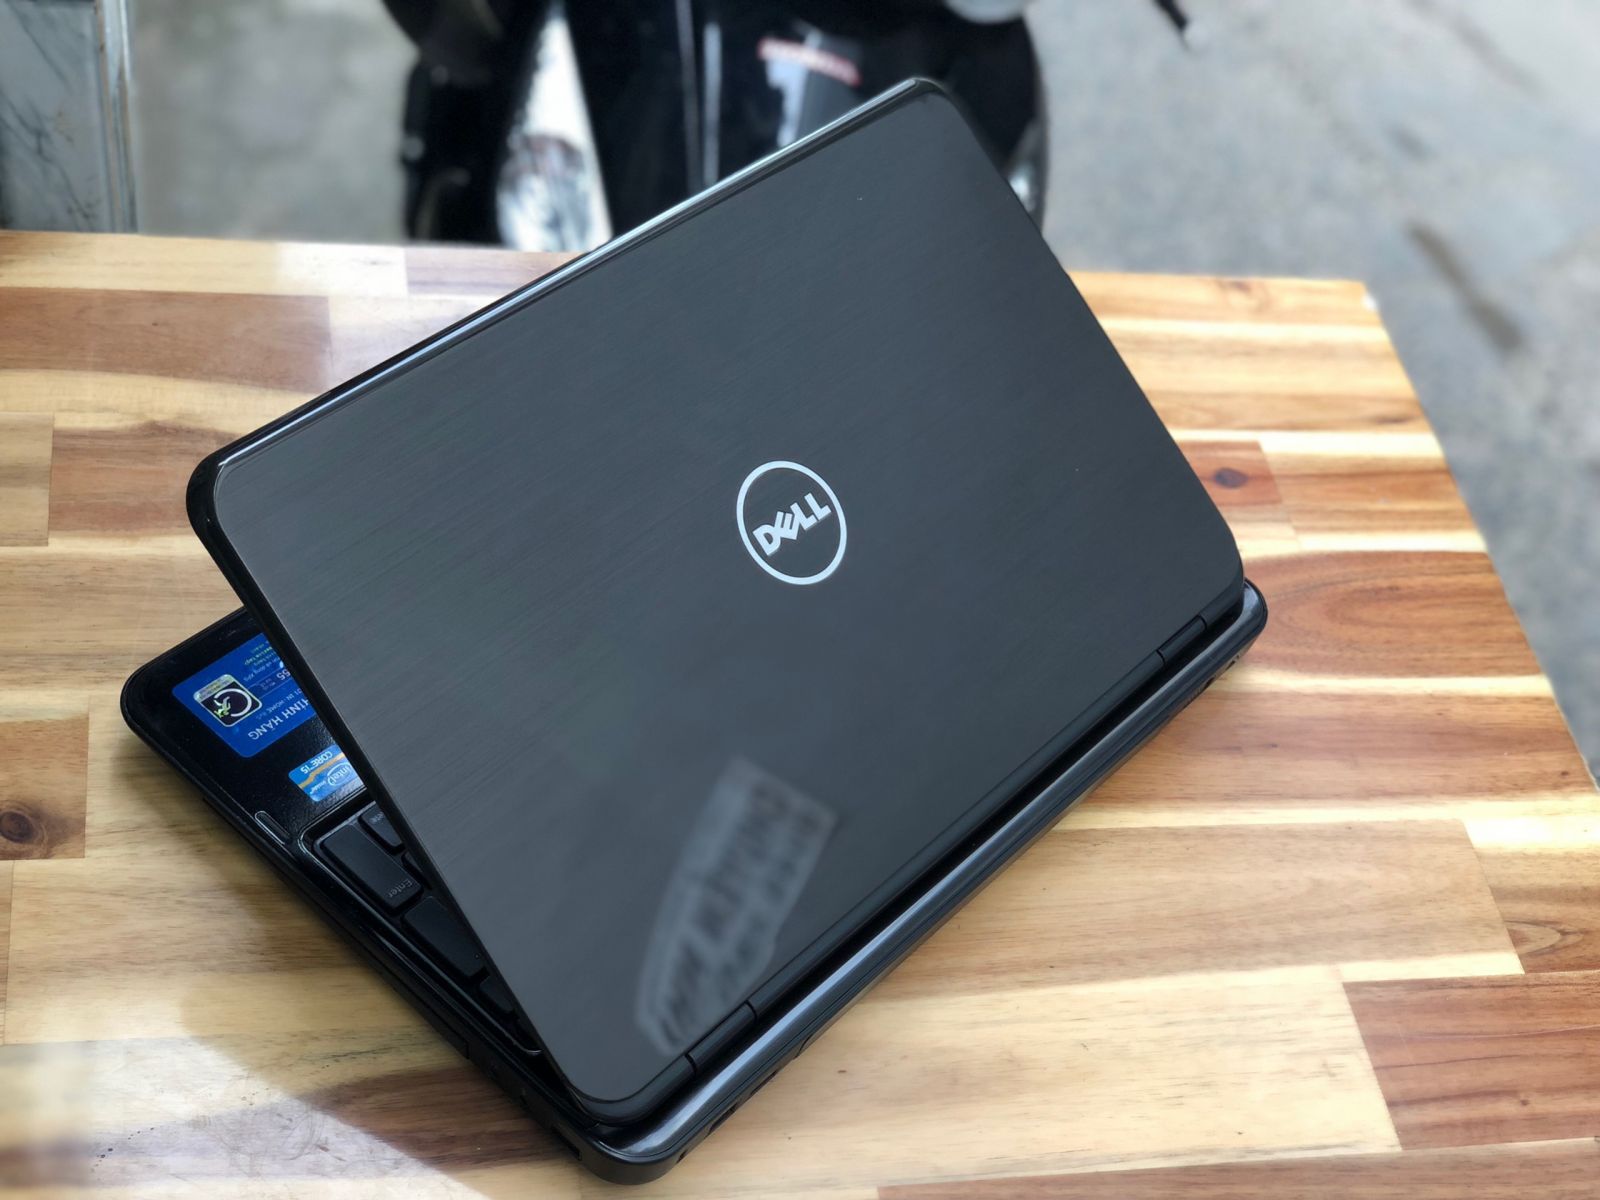 Laptop Dell Inspiron N5110 , i5 2540M 4G 500G 15inch Đẹp Keng Giá rẻ - 3